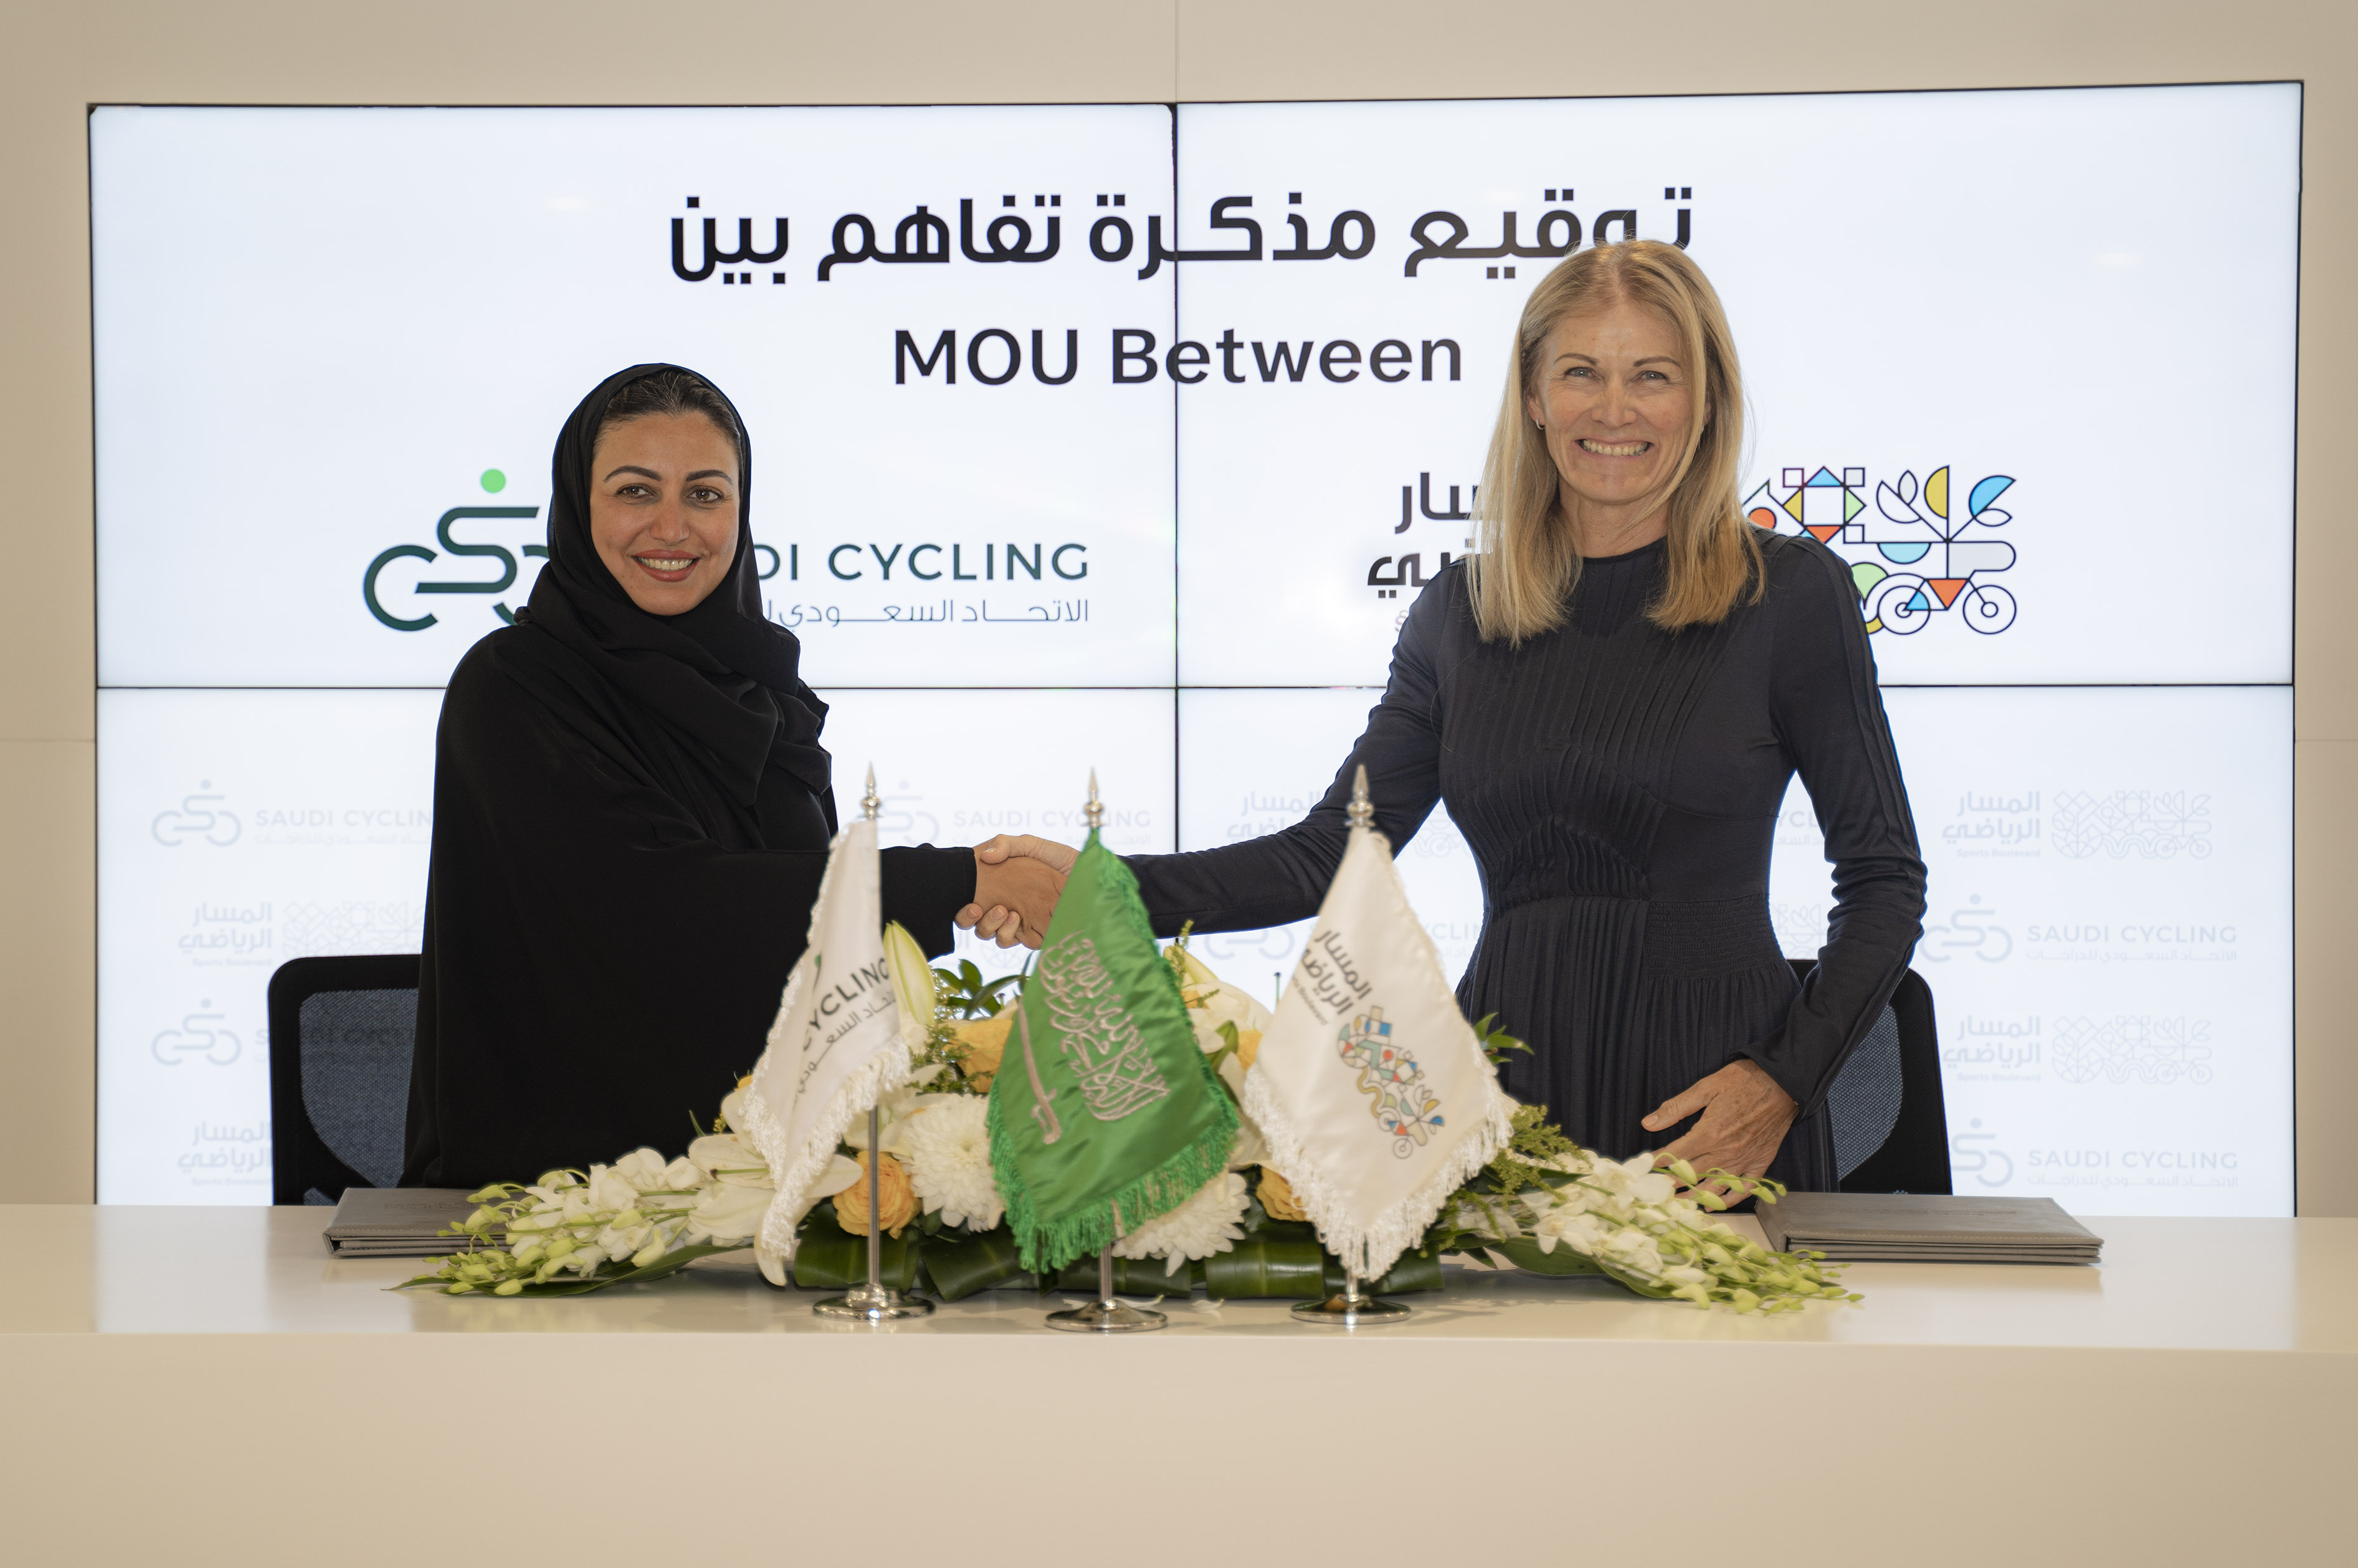 وقعت مؤسسة المسار الرياضي مذكرة تفاهم مع الاتحاد السعودي للدراجات لتعزيز فرص التعاون في مجالات رياضة الدراجات الهوائية ودعم الفعاليات والسباقات 